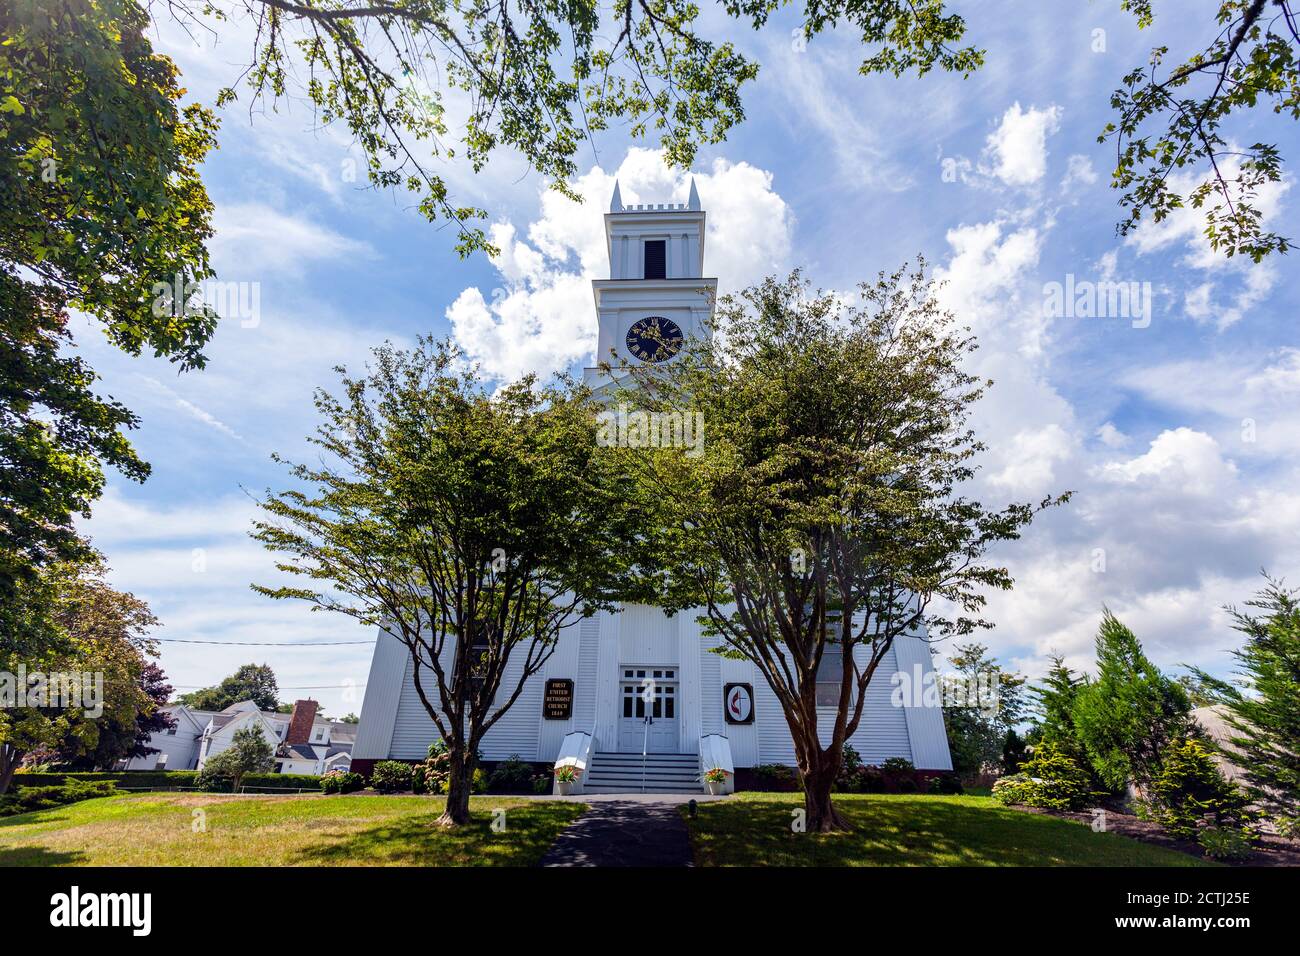 First United Methodist Church, Main St, Chatham, Massachusetts, USA Stock Photo